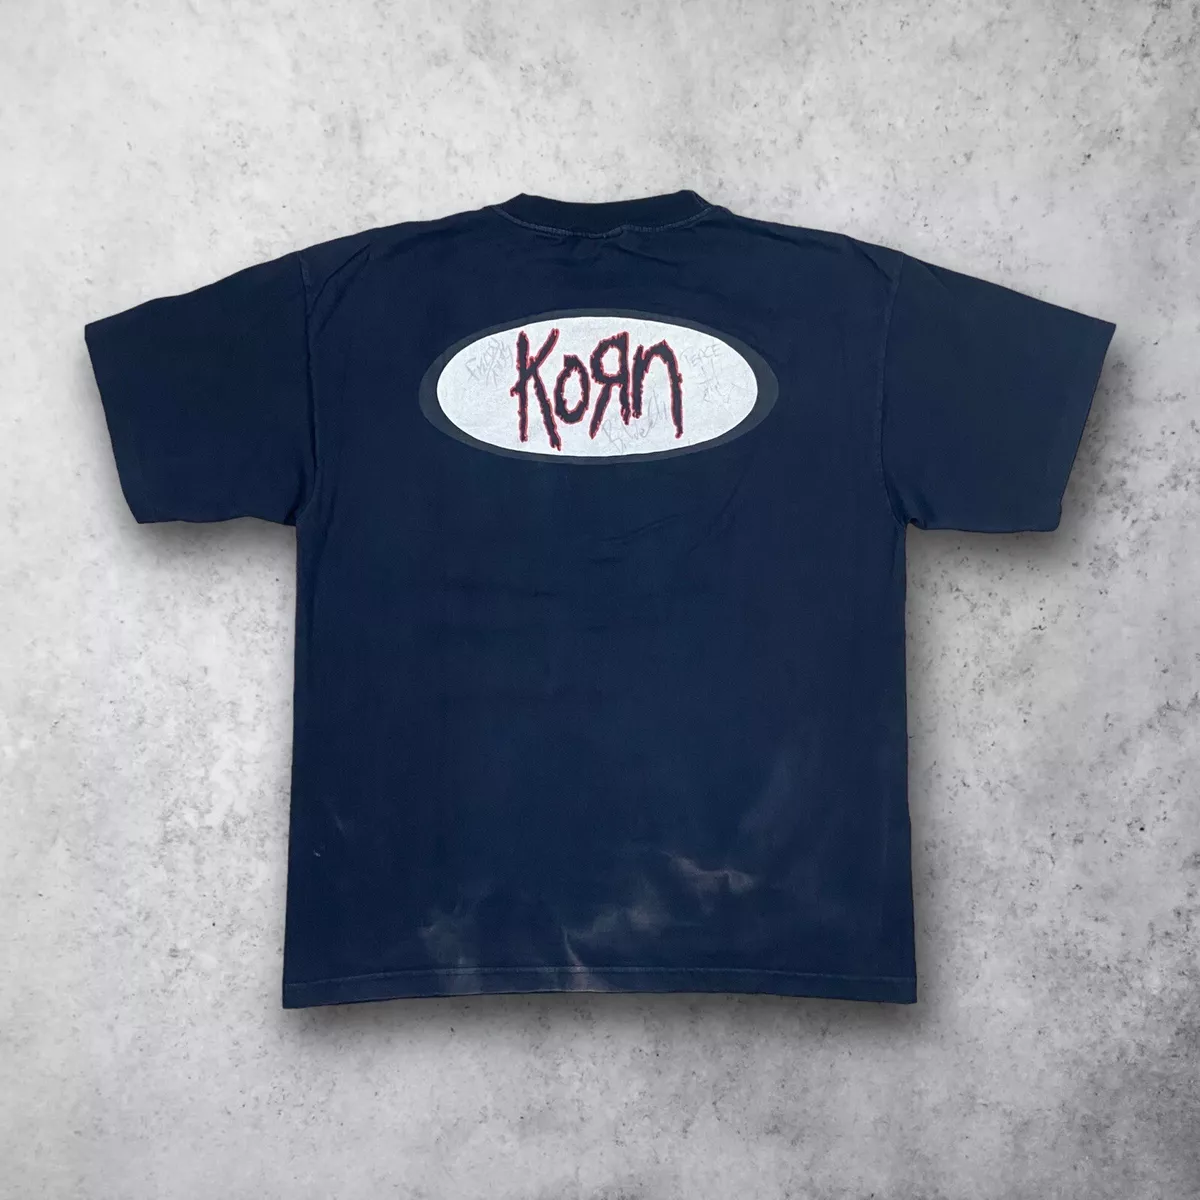 SIGNED Vintage 90s Korn Metal Band Striped T-Shirt Black Men's Sz